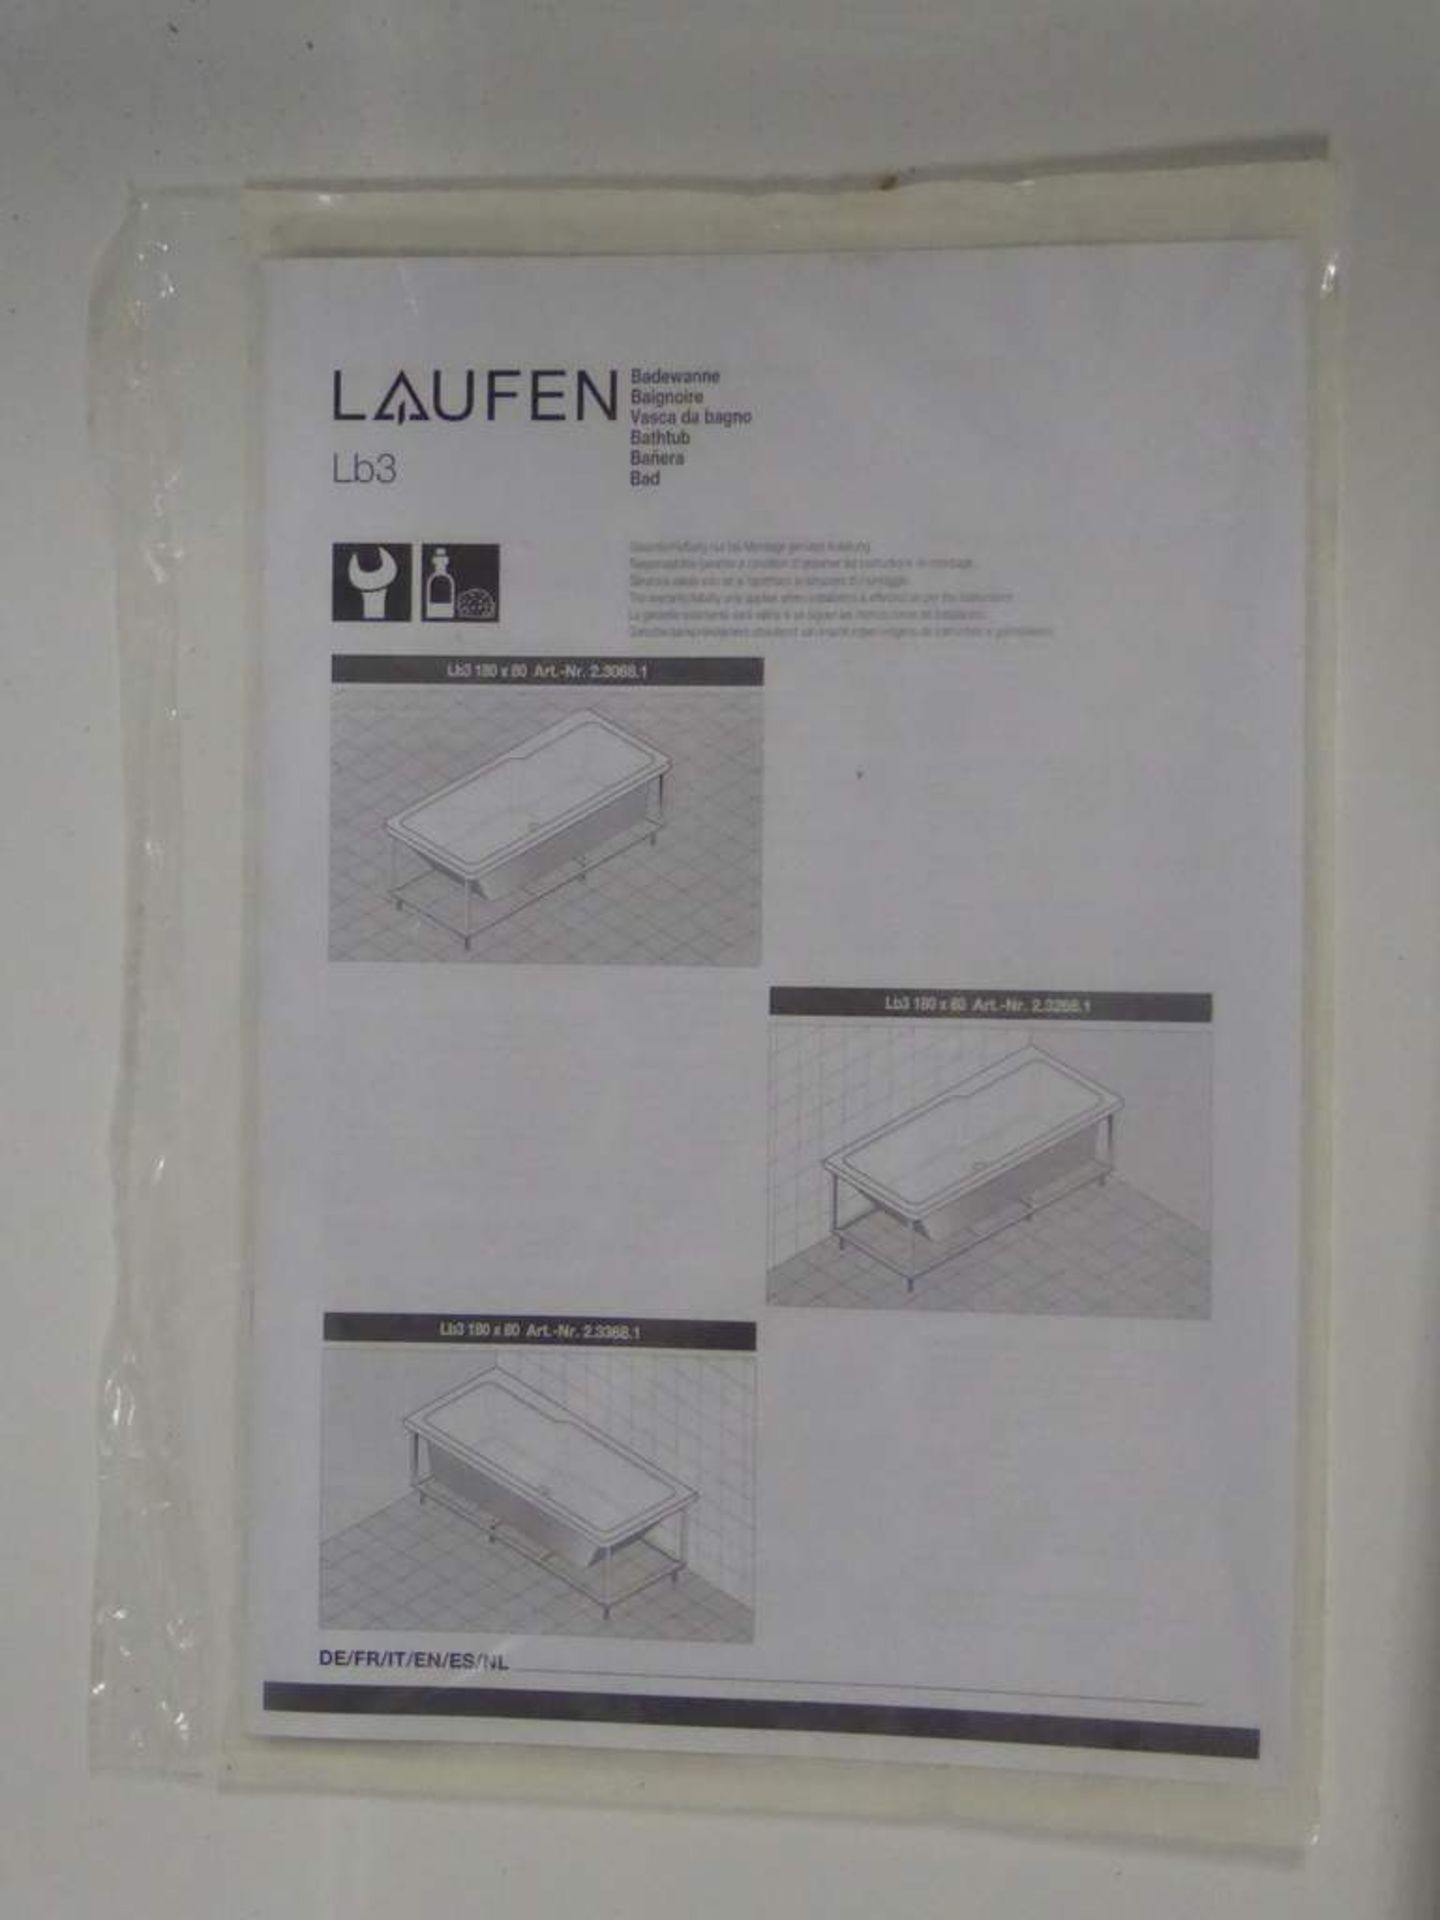 Laufen Wanna LB3 180x80cm bath - Image 4 of 4